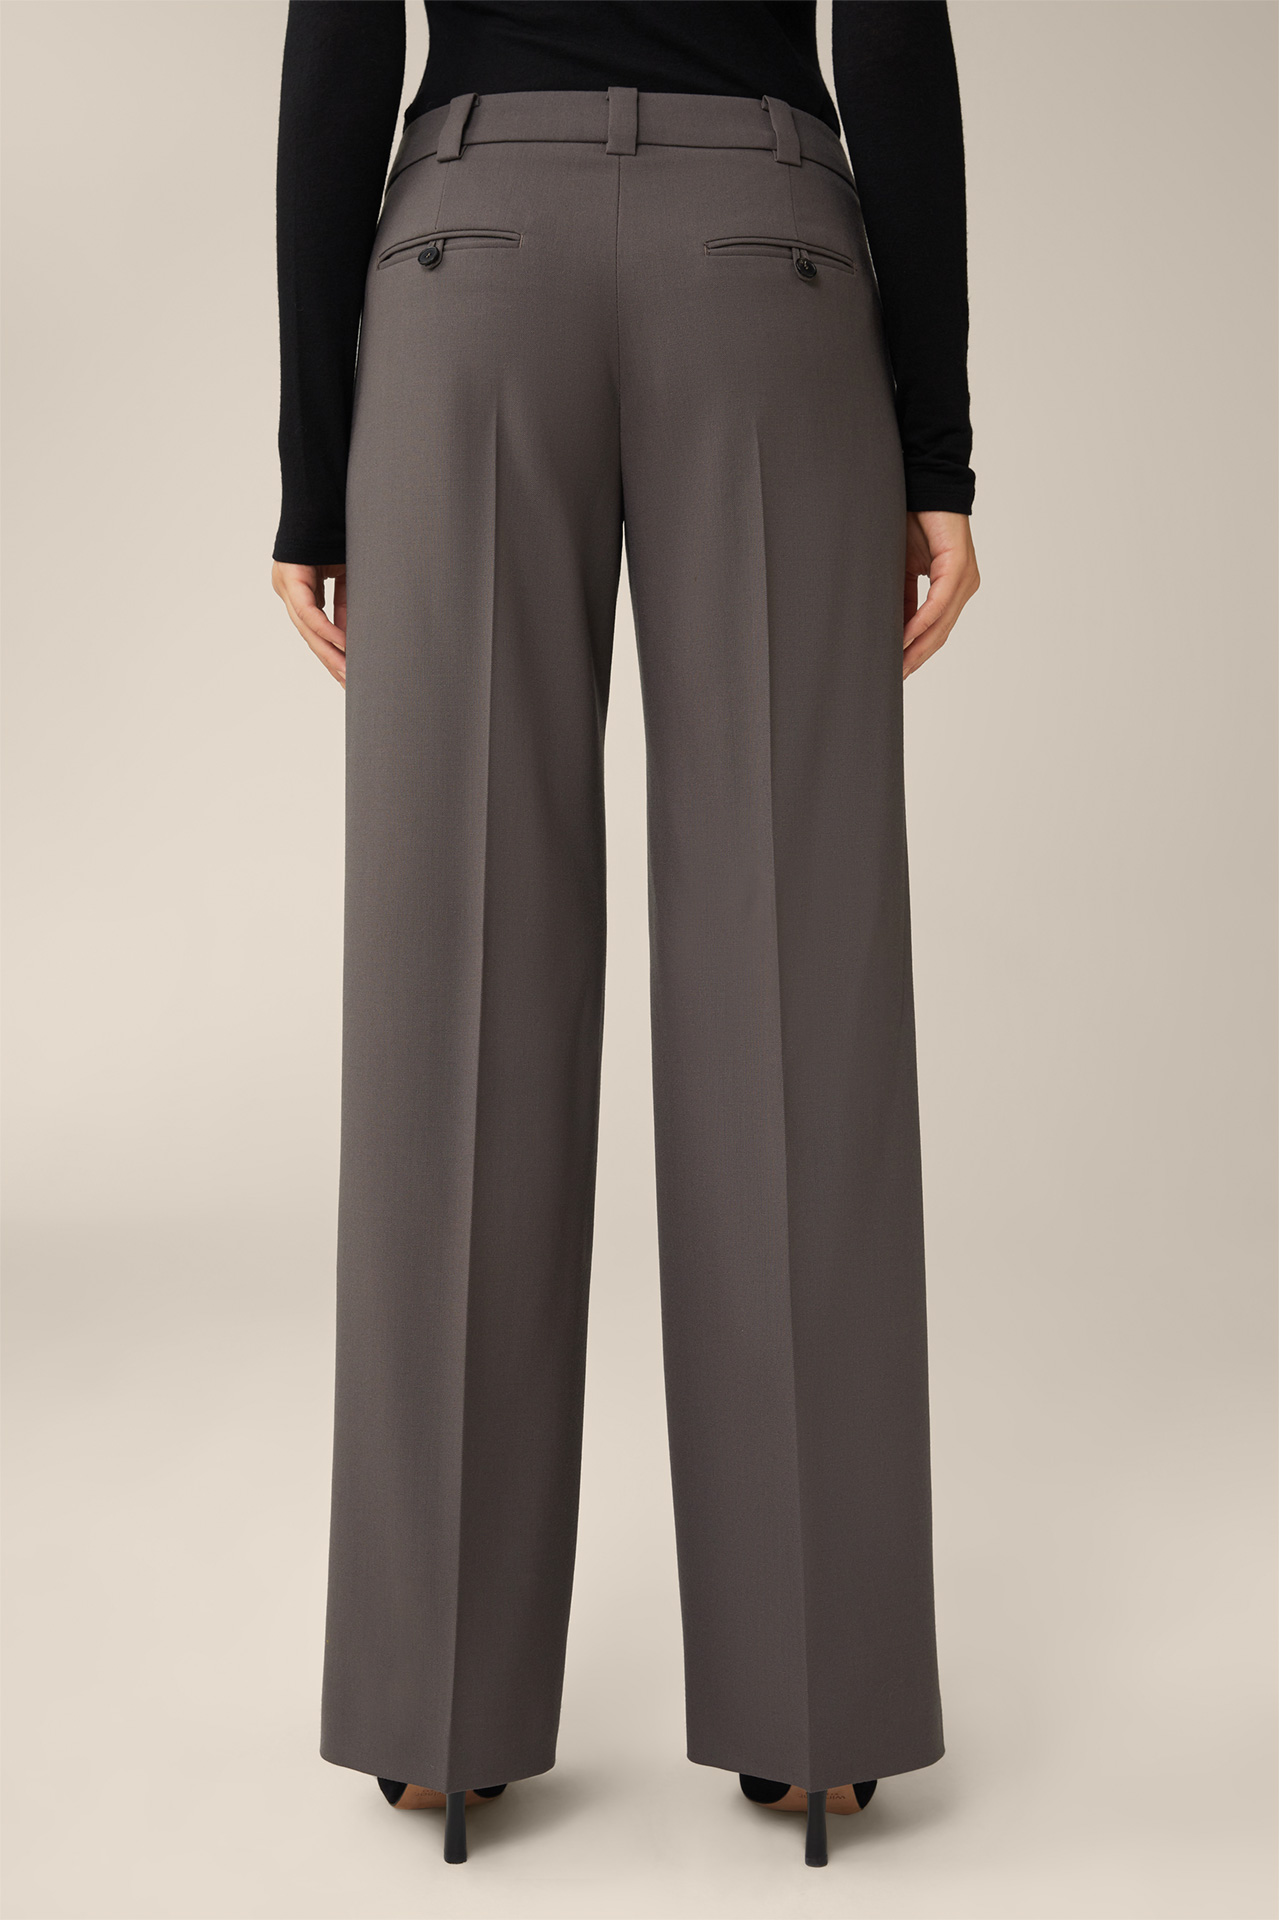 Pantalon Marlene en laine vierge, couleur marron